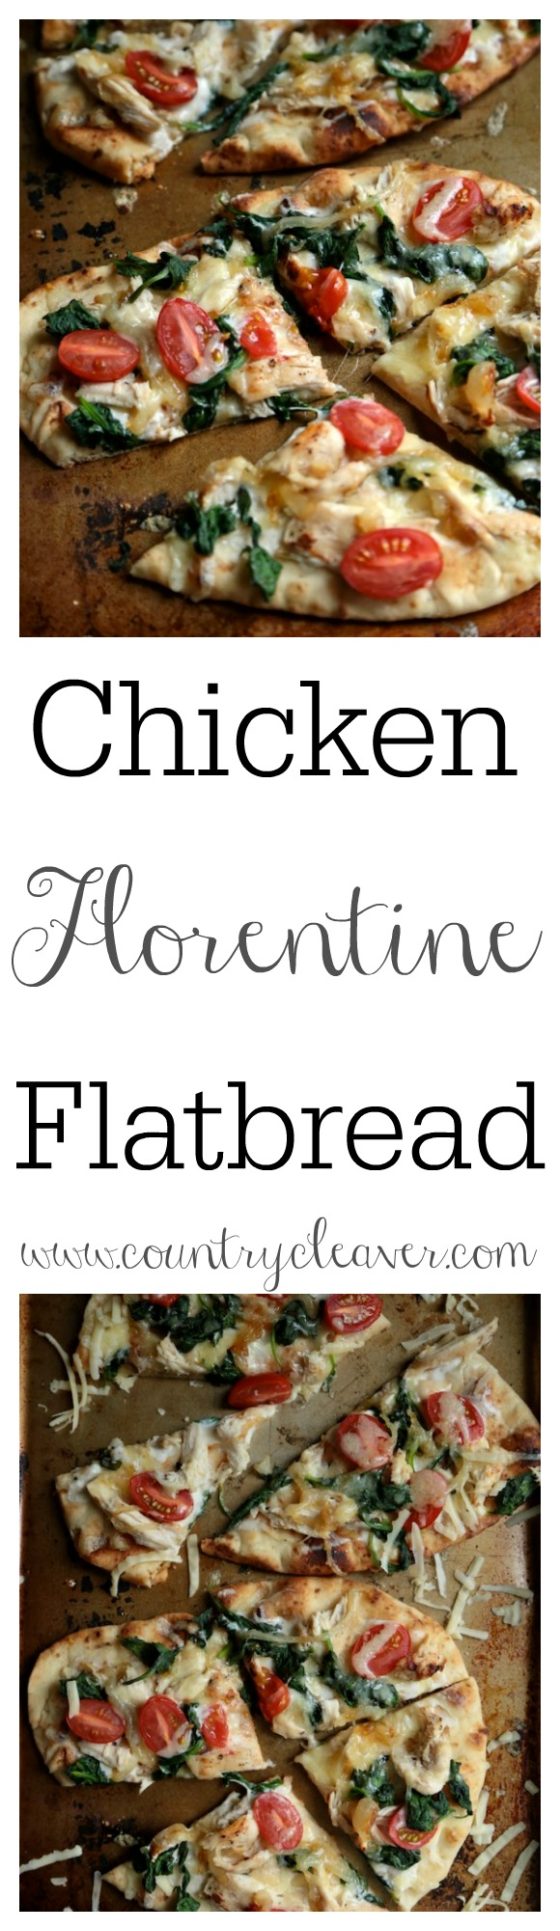 Chicken Florentine Flatbread